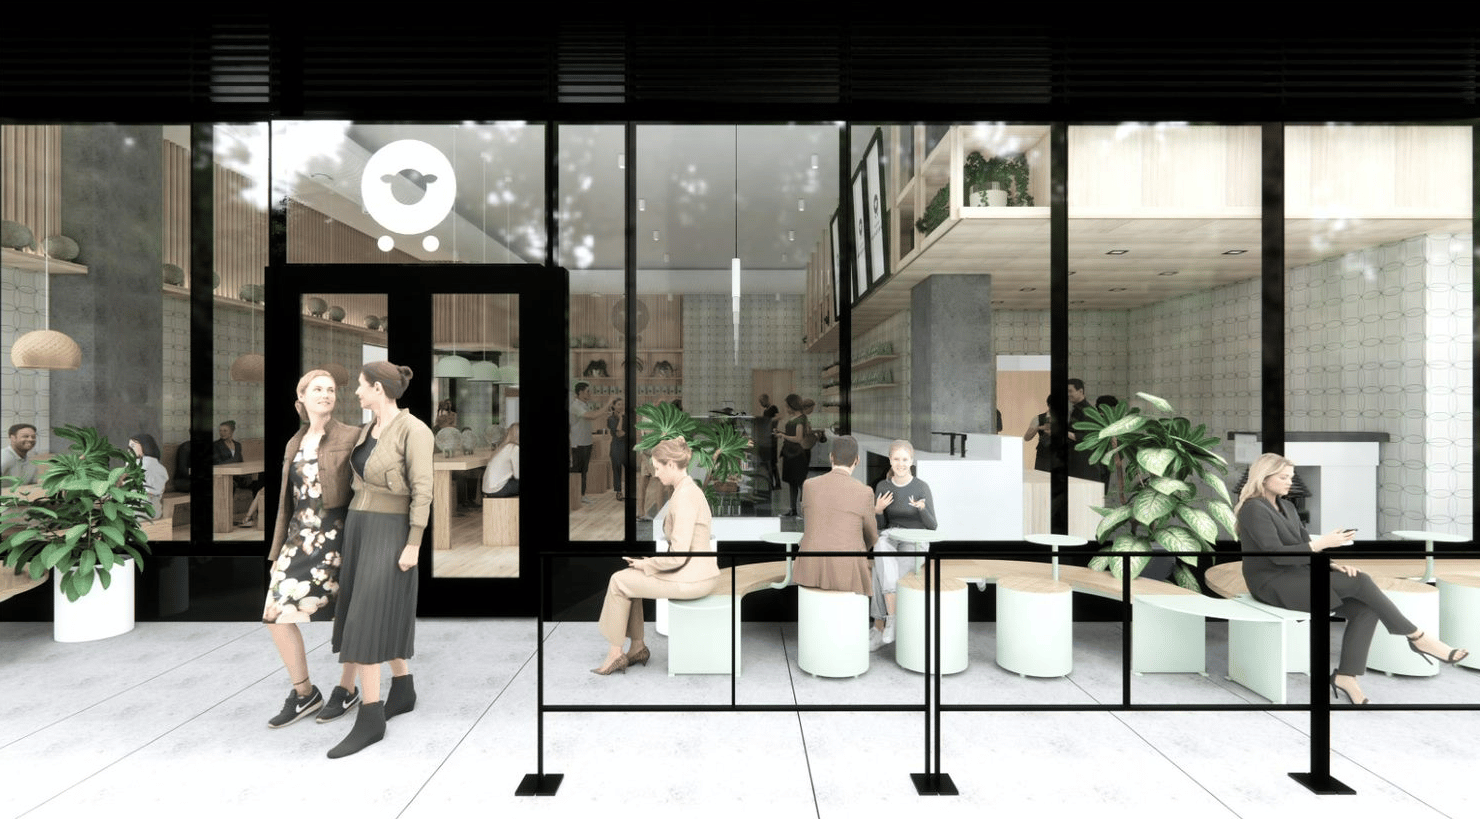 Coffee shop rendering